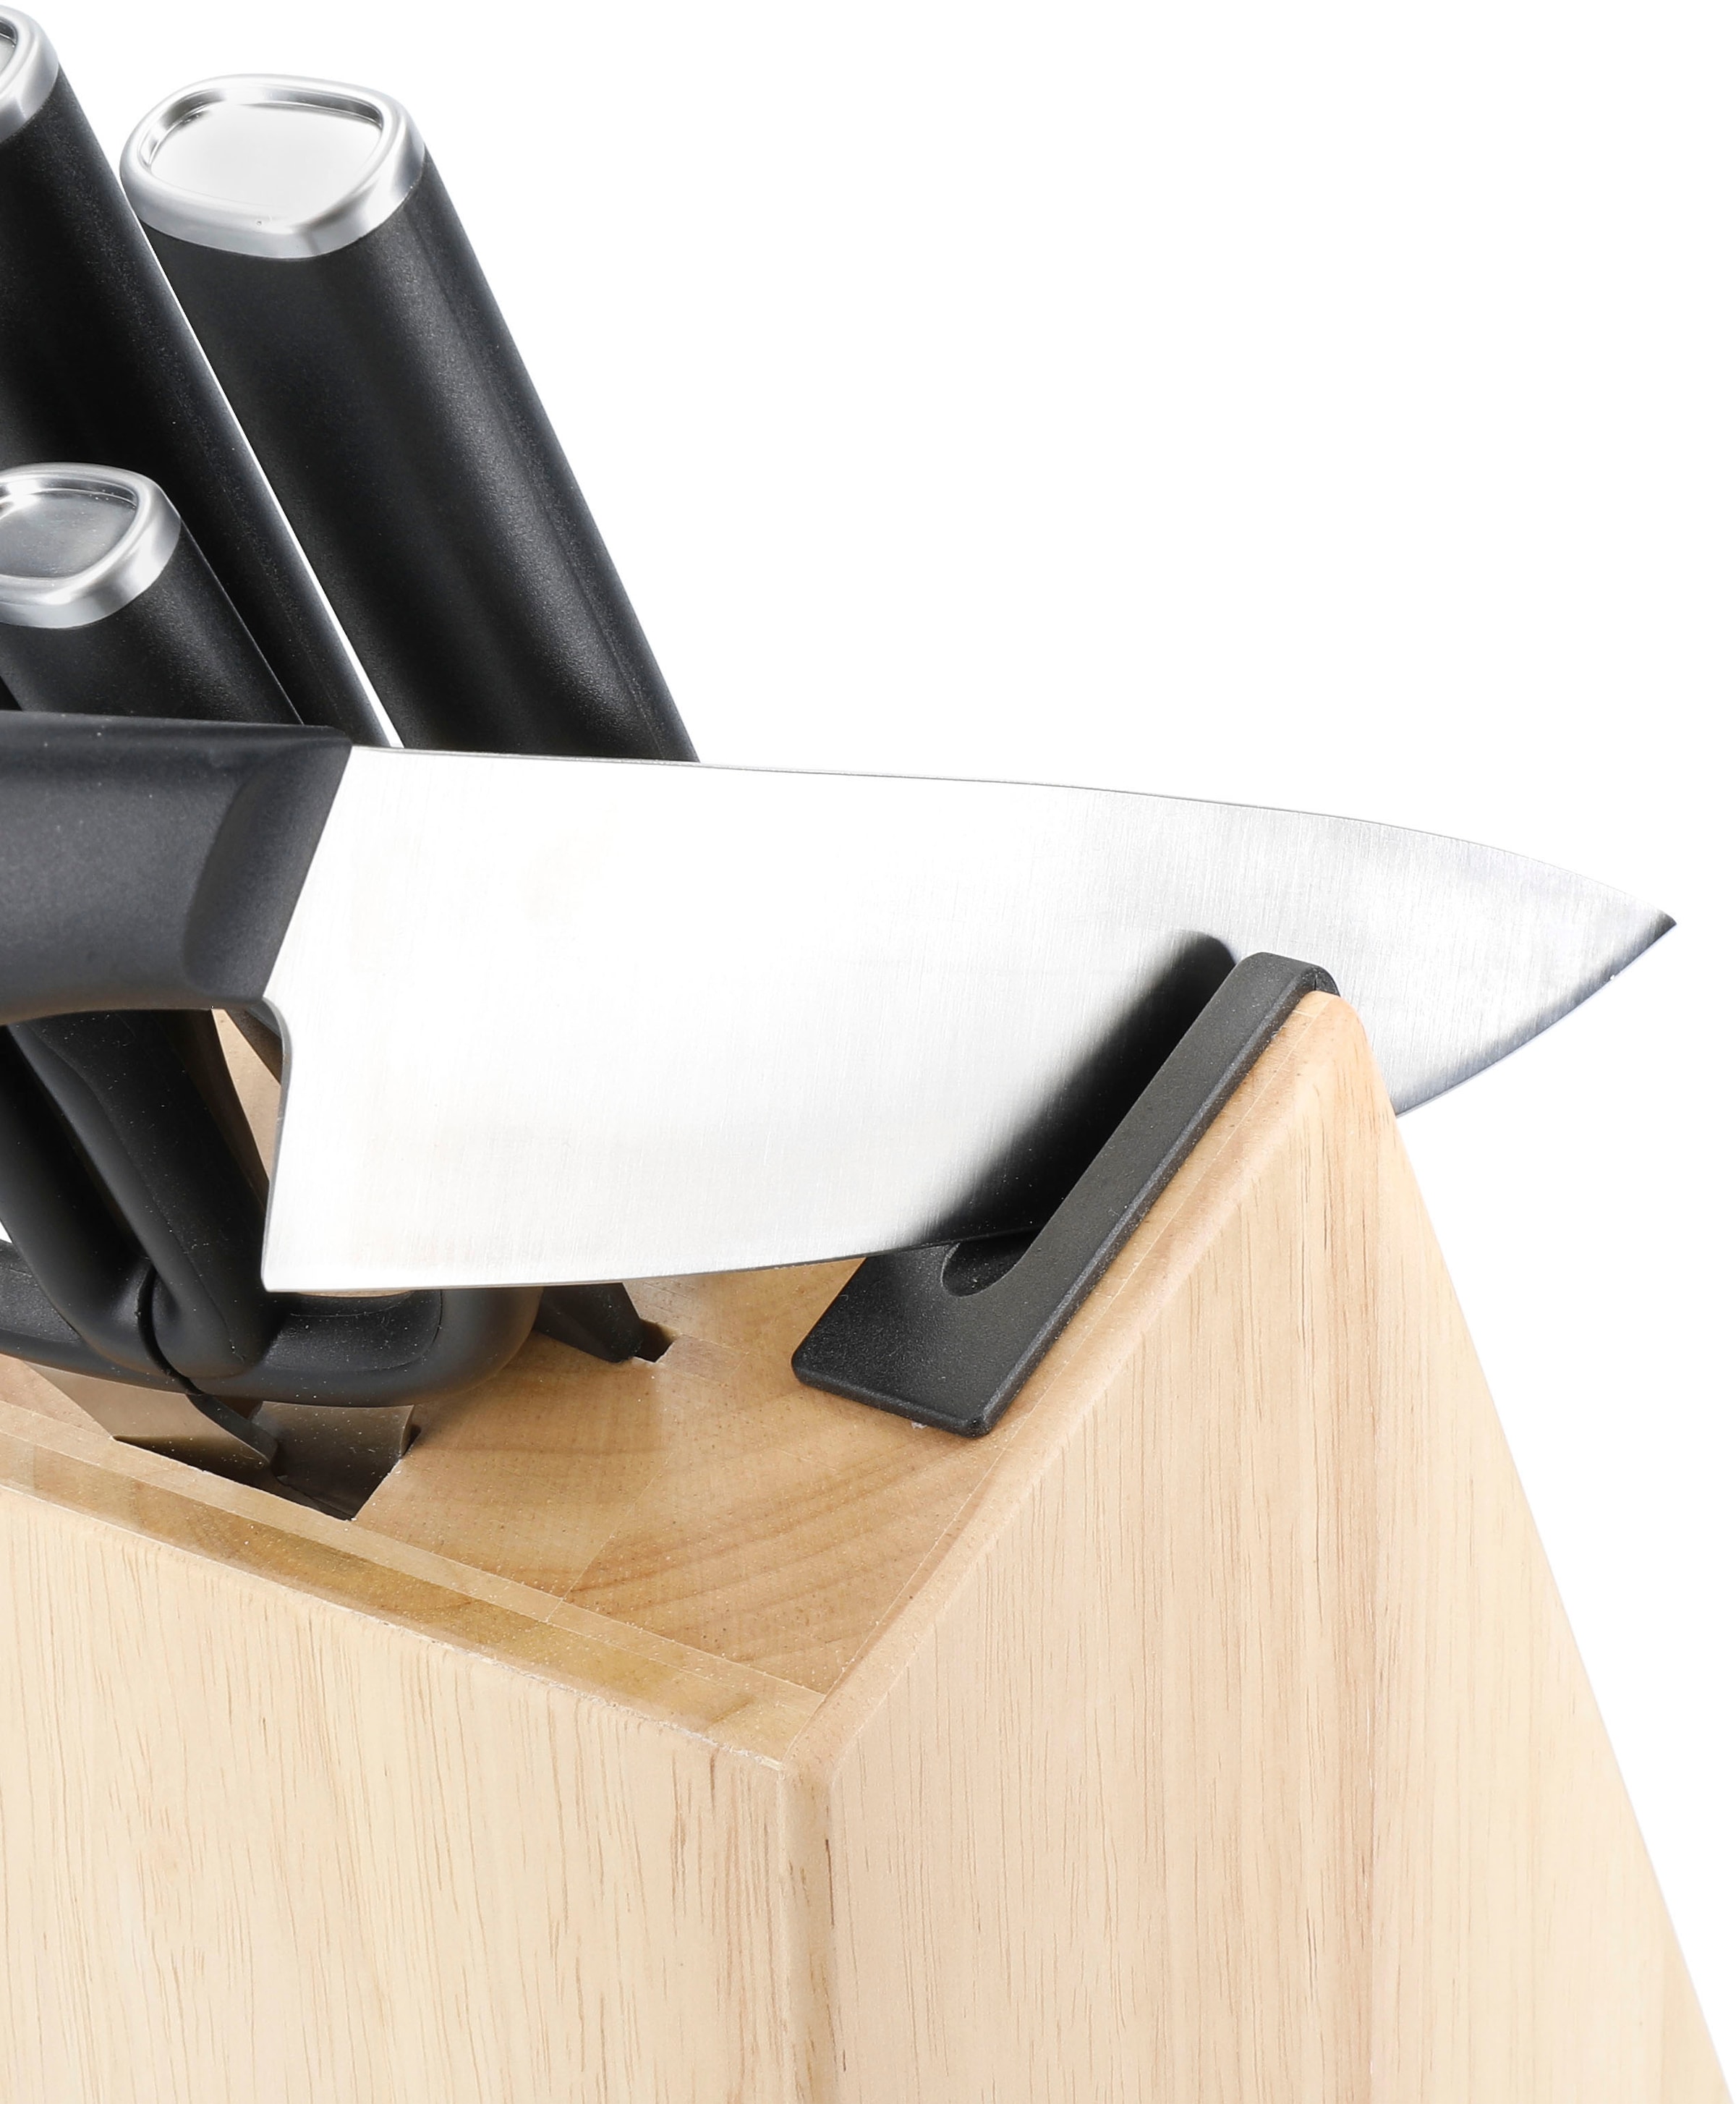 KitchenAid Messerblock »Classic«, 6 tlg., Messer aus japanischem Kohlenstoffstahl, inkl. integri. Messerschärfer